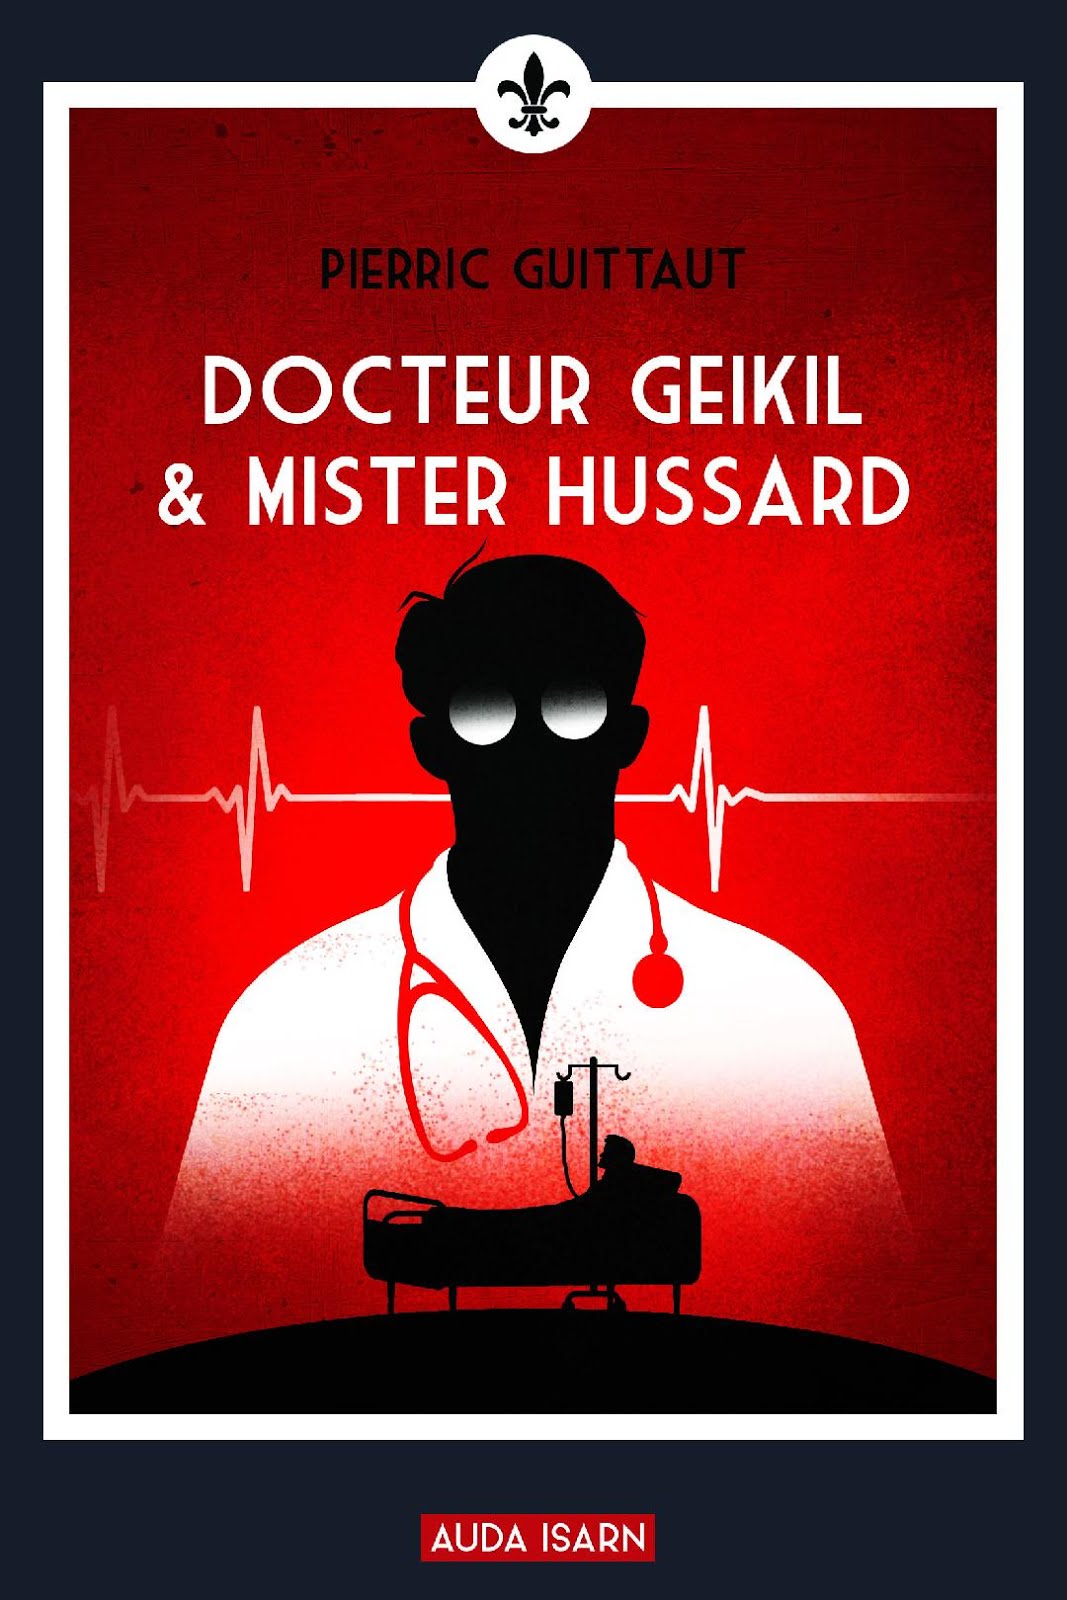 Dr Geikil & Mister Hussard